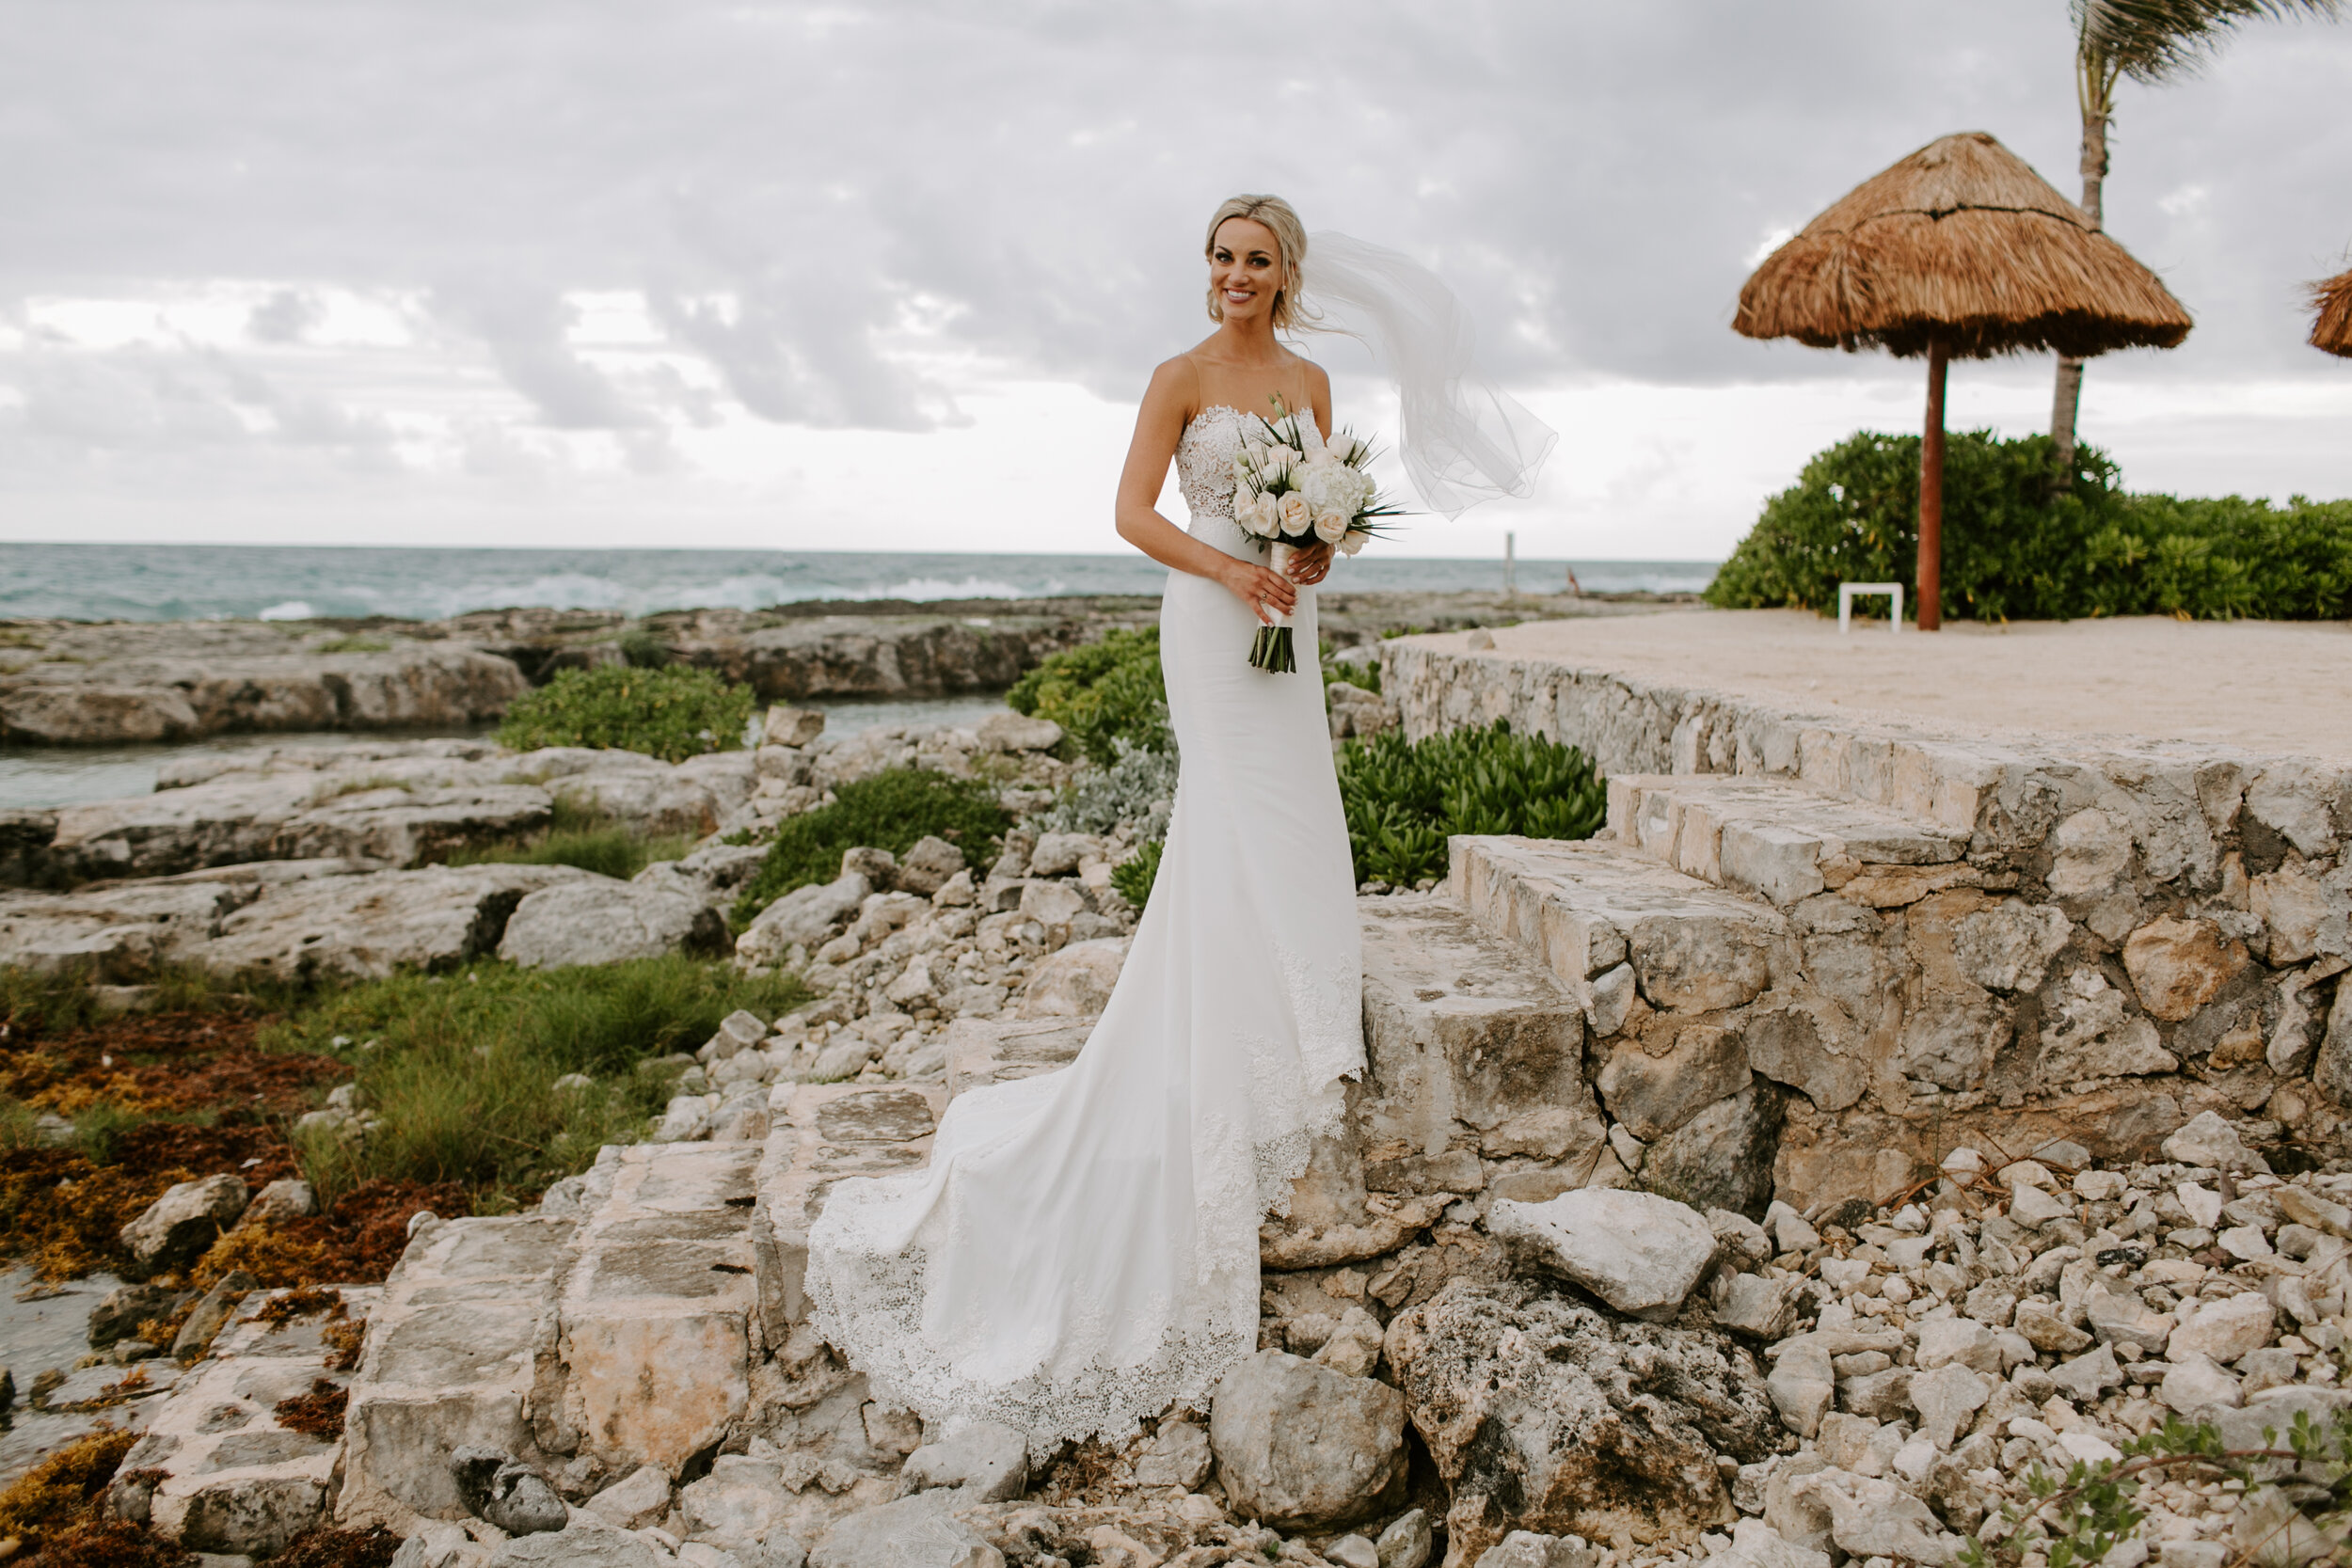 Cancun Wedding Photographer, Cancun Mexico Wedding, Destination Wedding photographer, Chicago wedding photographer, destination Cancun wedding